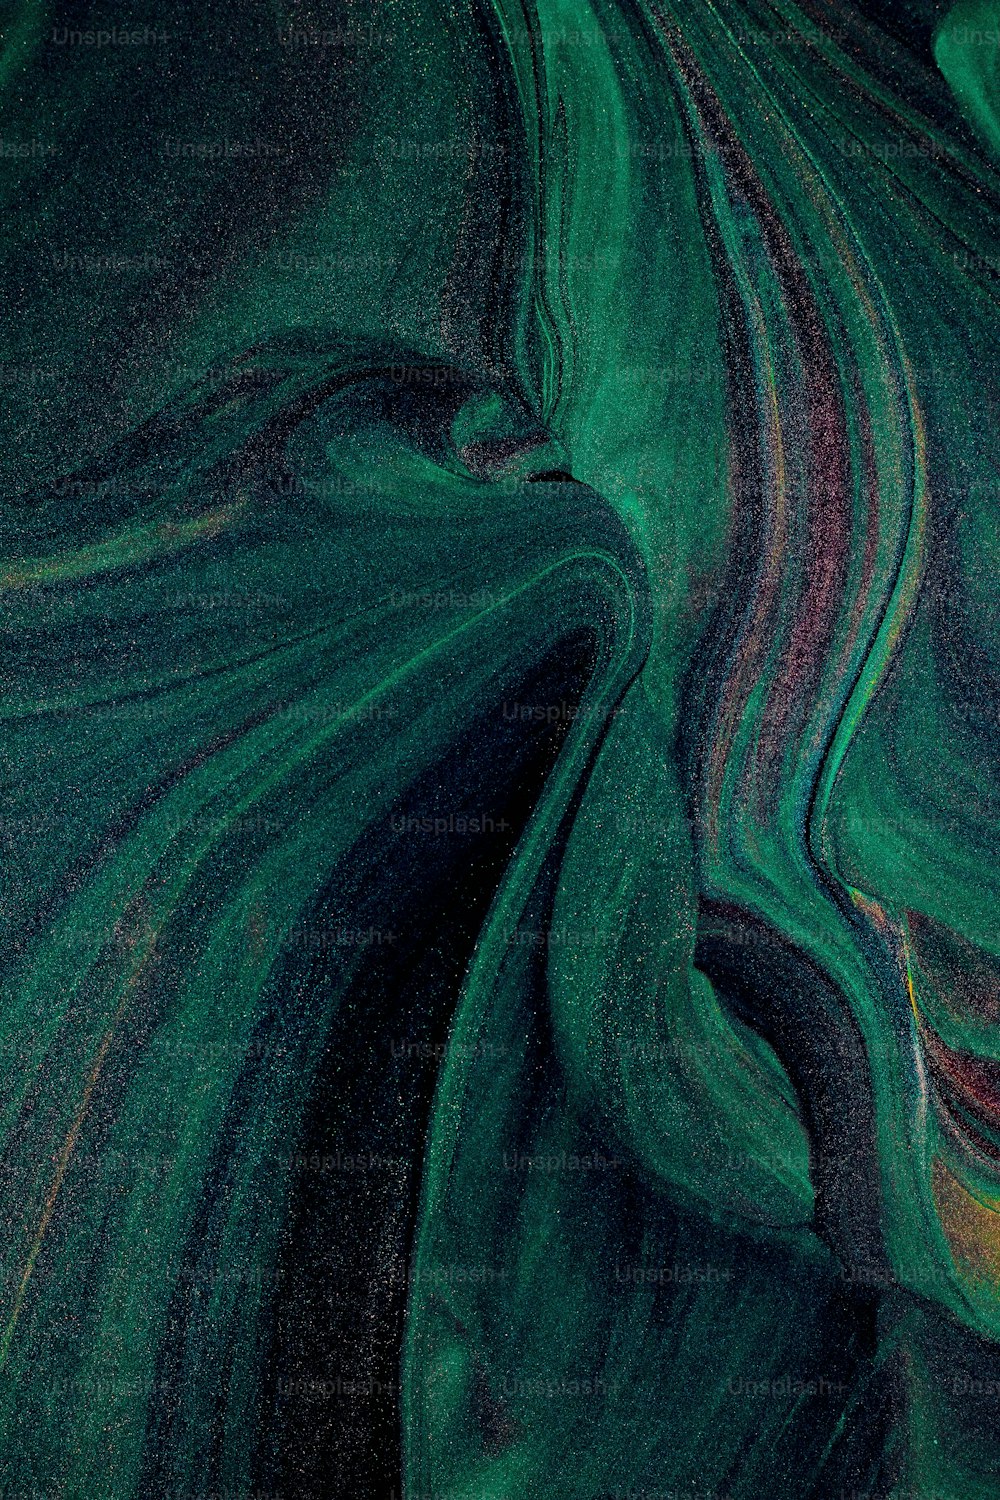 Vue rapprochée d’une surface verte et noire